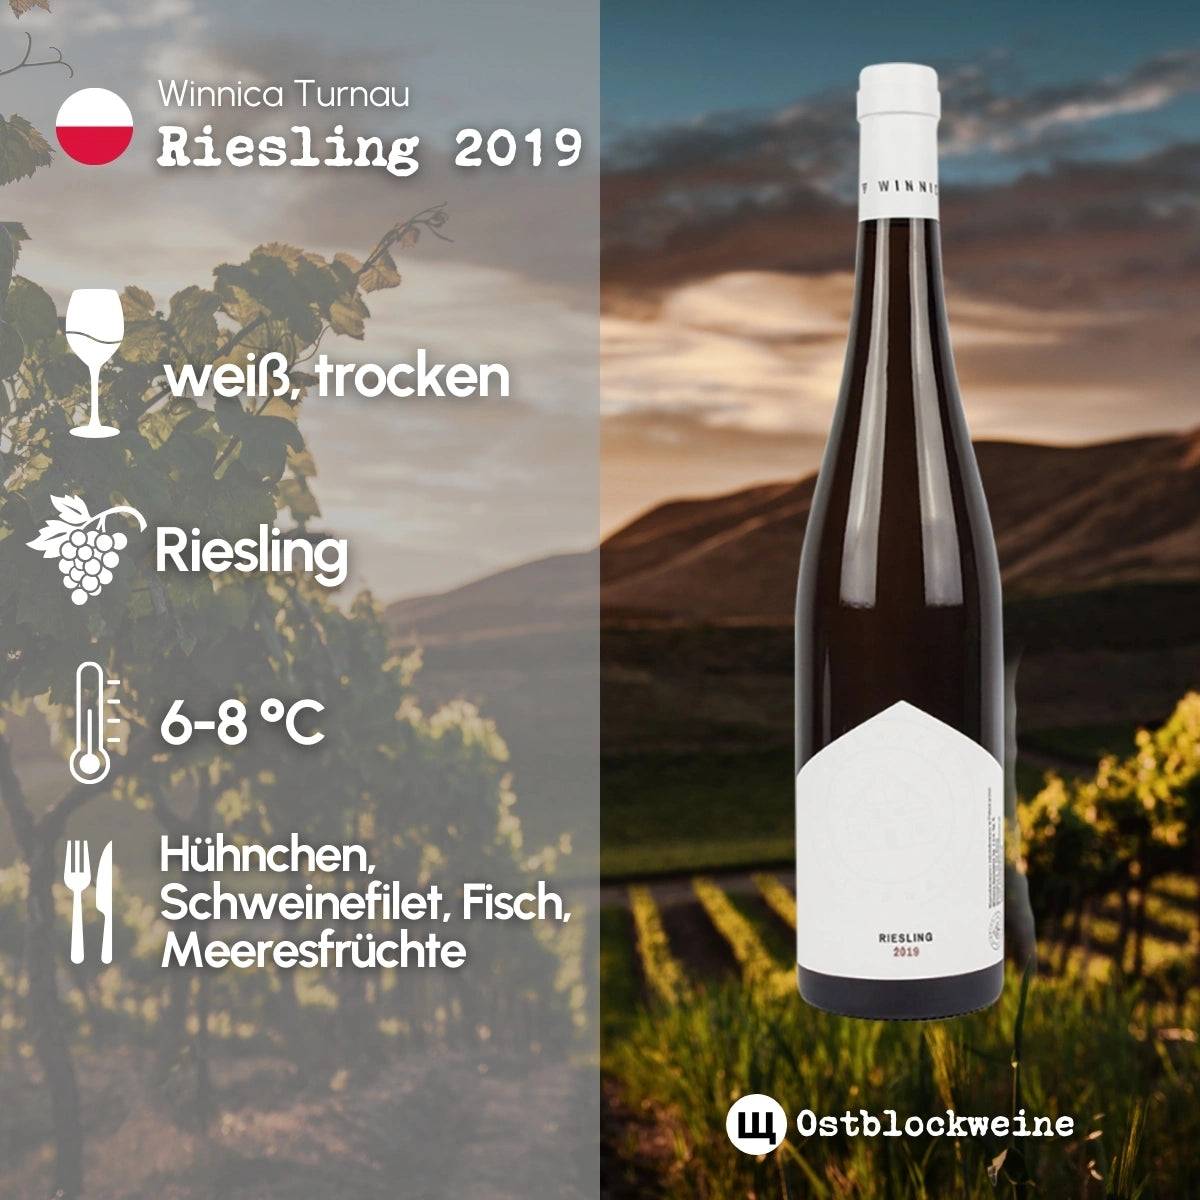 Riesling 2019 - Weißwein trocken aus Polen - Winnica Turnau - ostblockweine